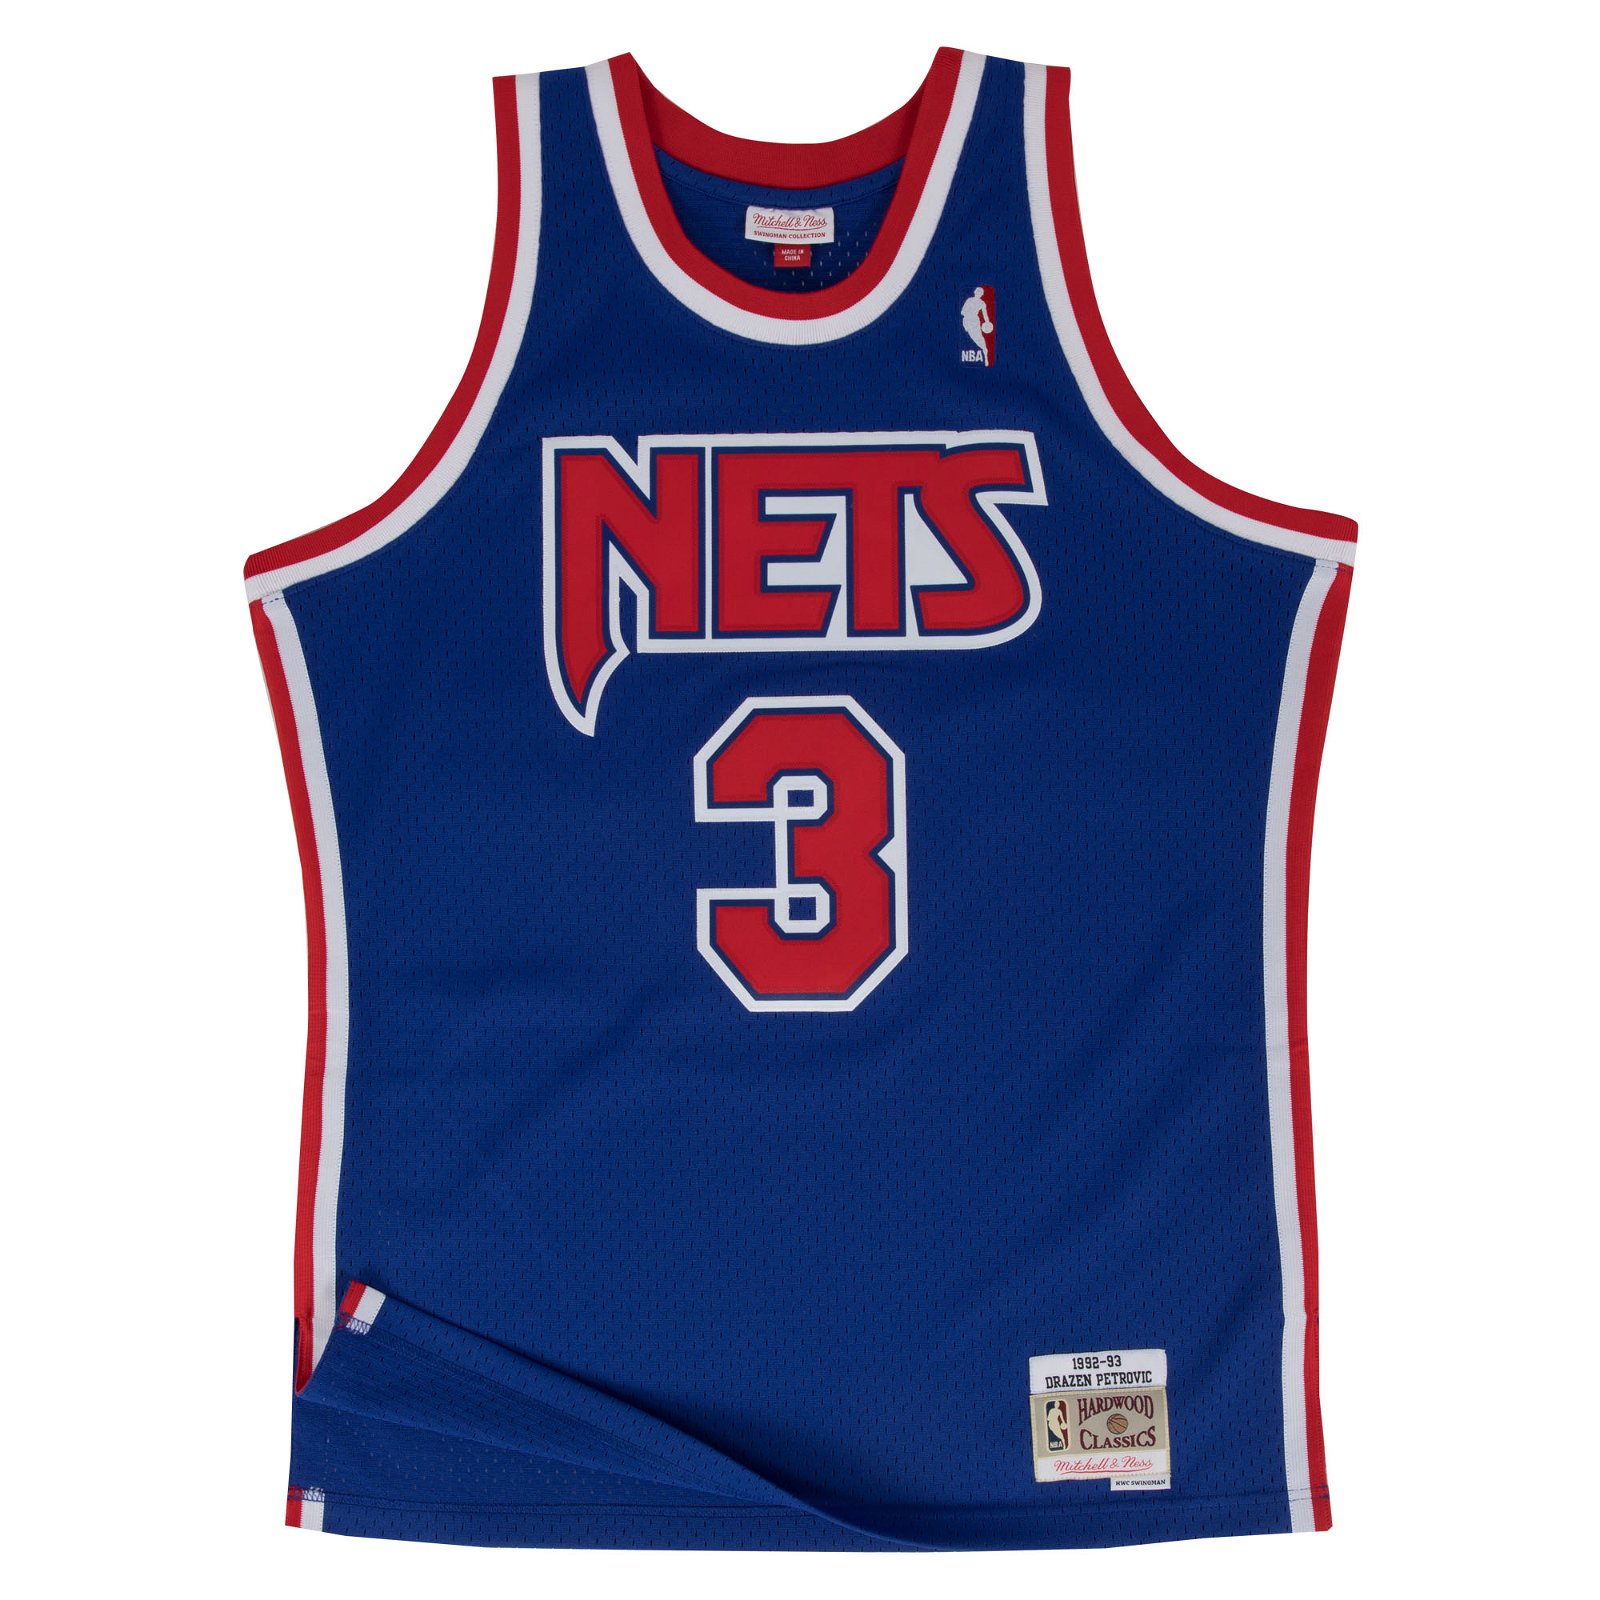 New Jersey Nets Drazen Petrovic NBA Swingman Jersey